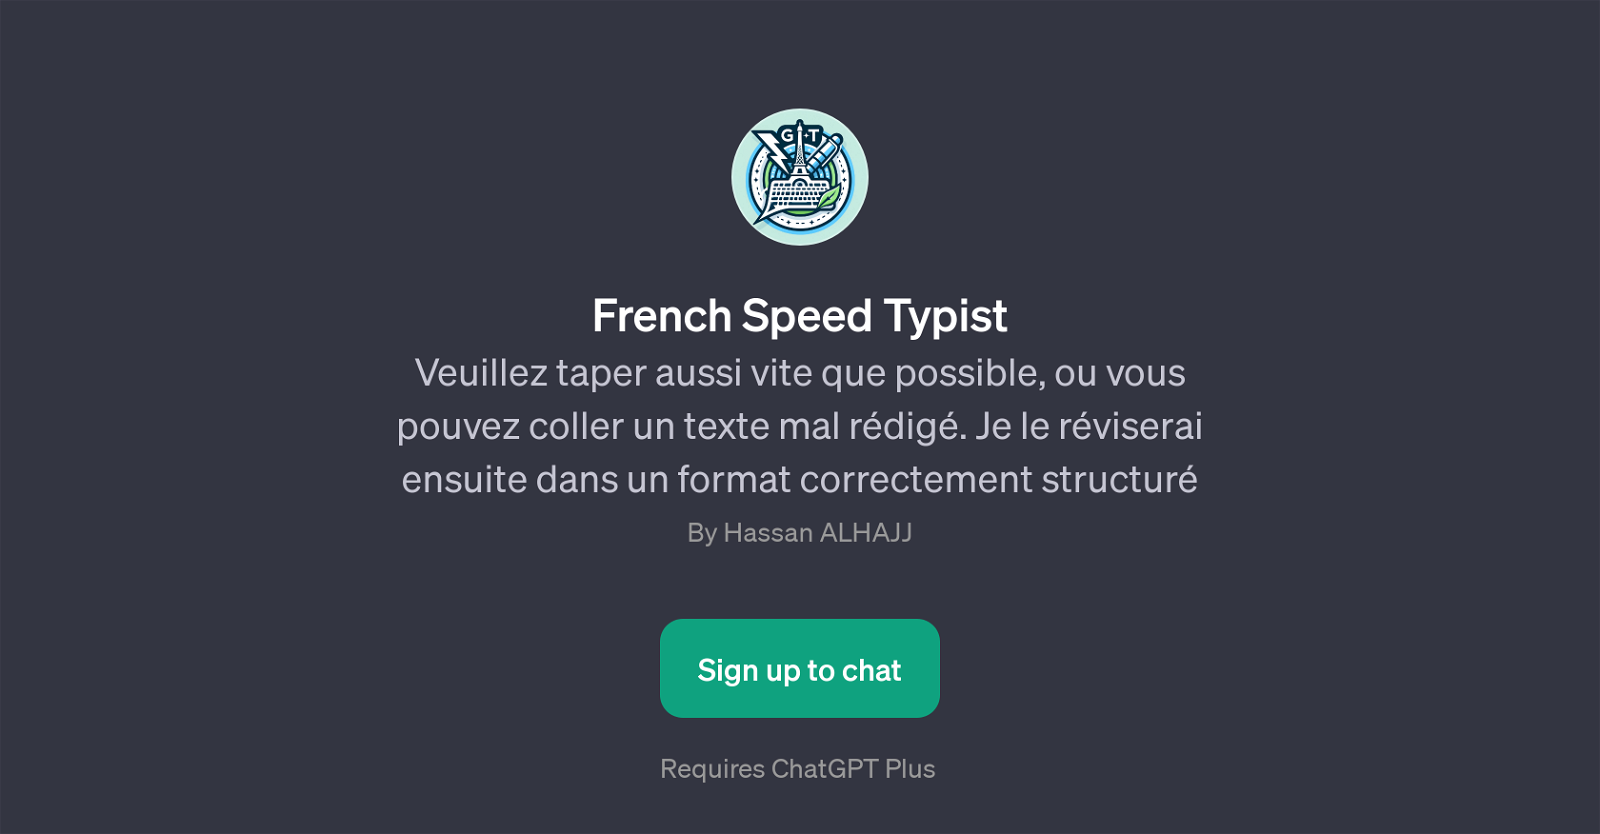 French Speed Typist website